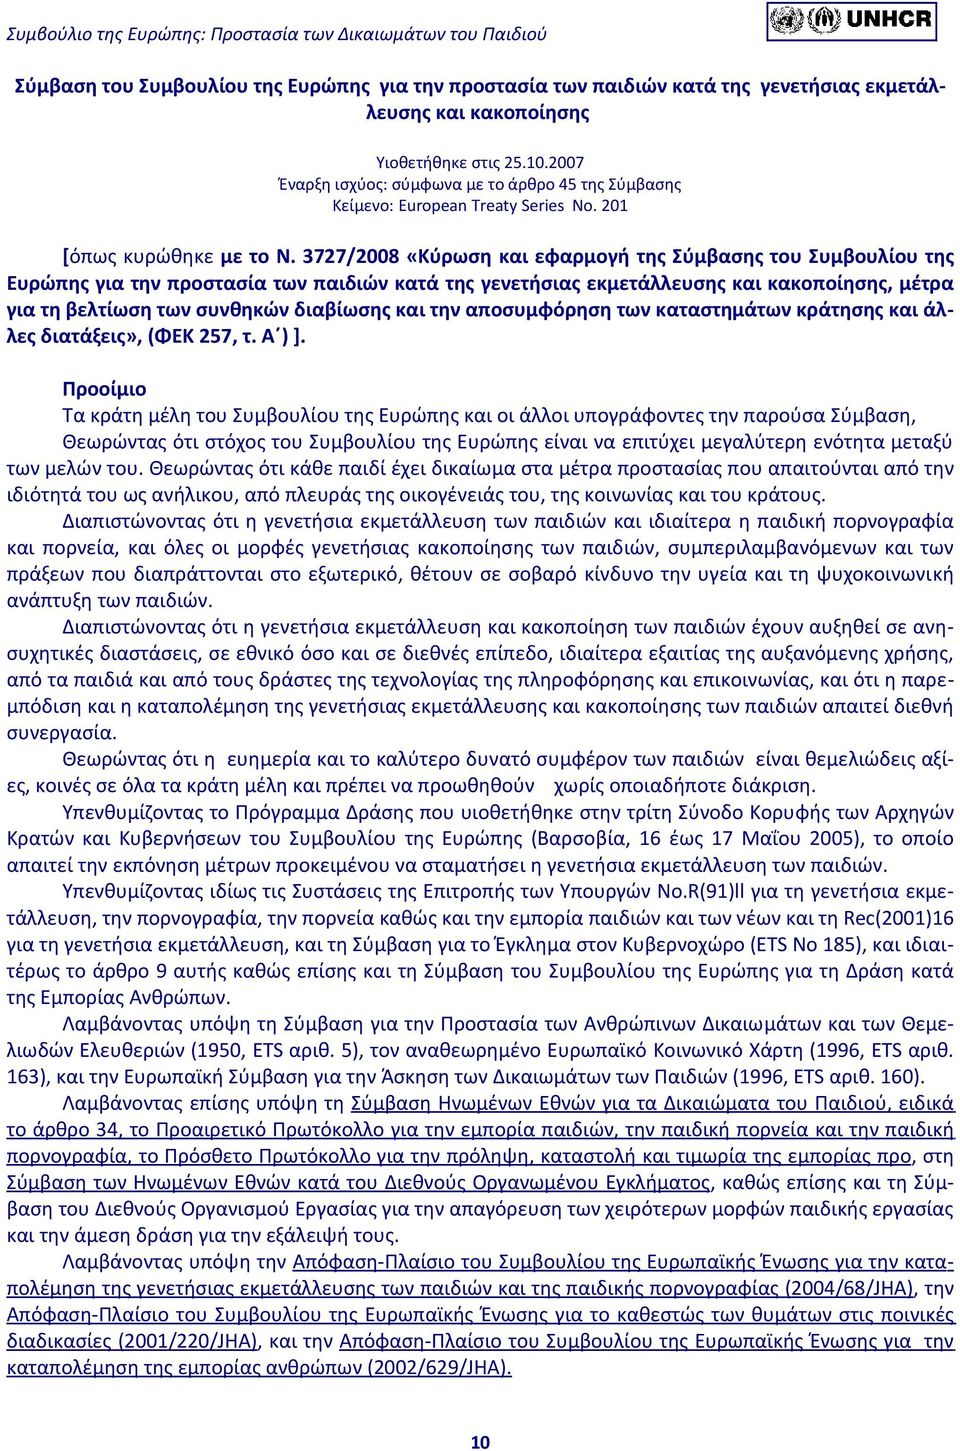 3727/2008 «Κύρωση και εφαρμογή της Σύμβασης του Συμβουλίου της Ευρώπης για την προστασία των παιδιών κατά της γενετήσιας εκμετάλλευσης και κακοποίησης, μέτρα για τη βελτίωση των συνθηκών διαβίωσης